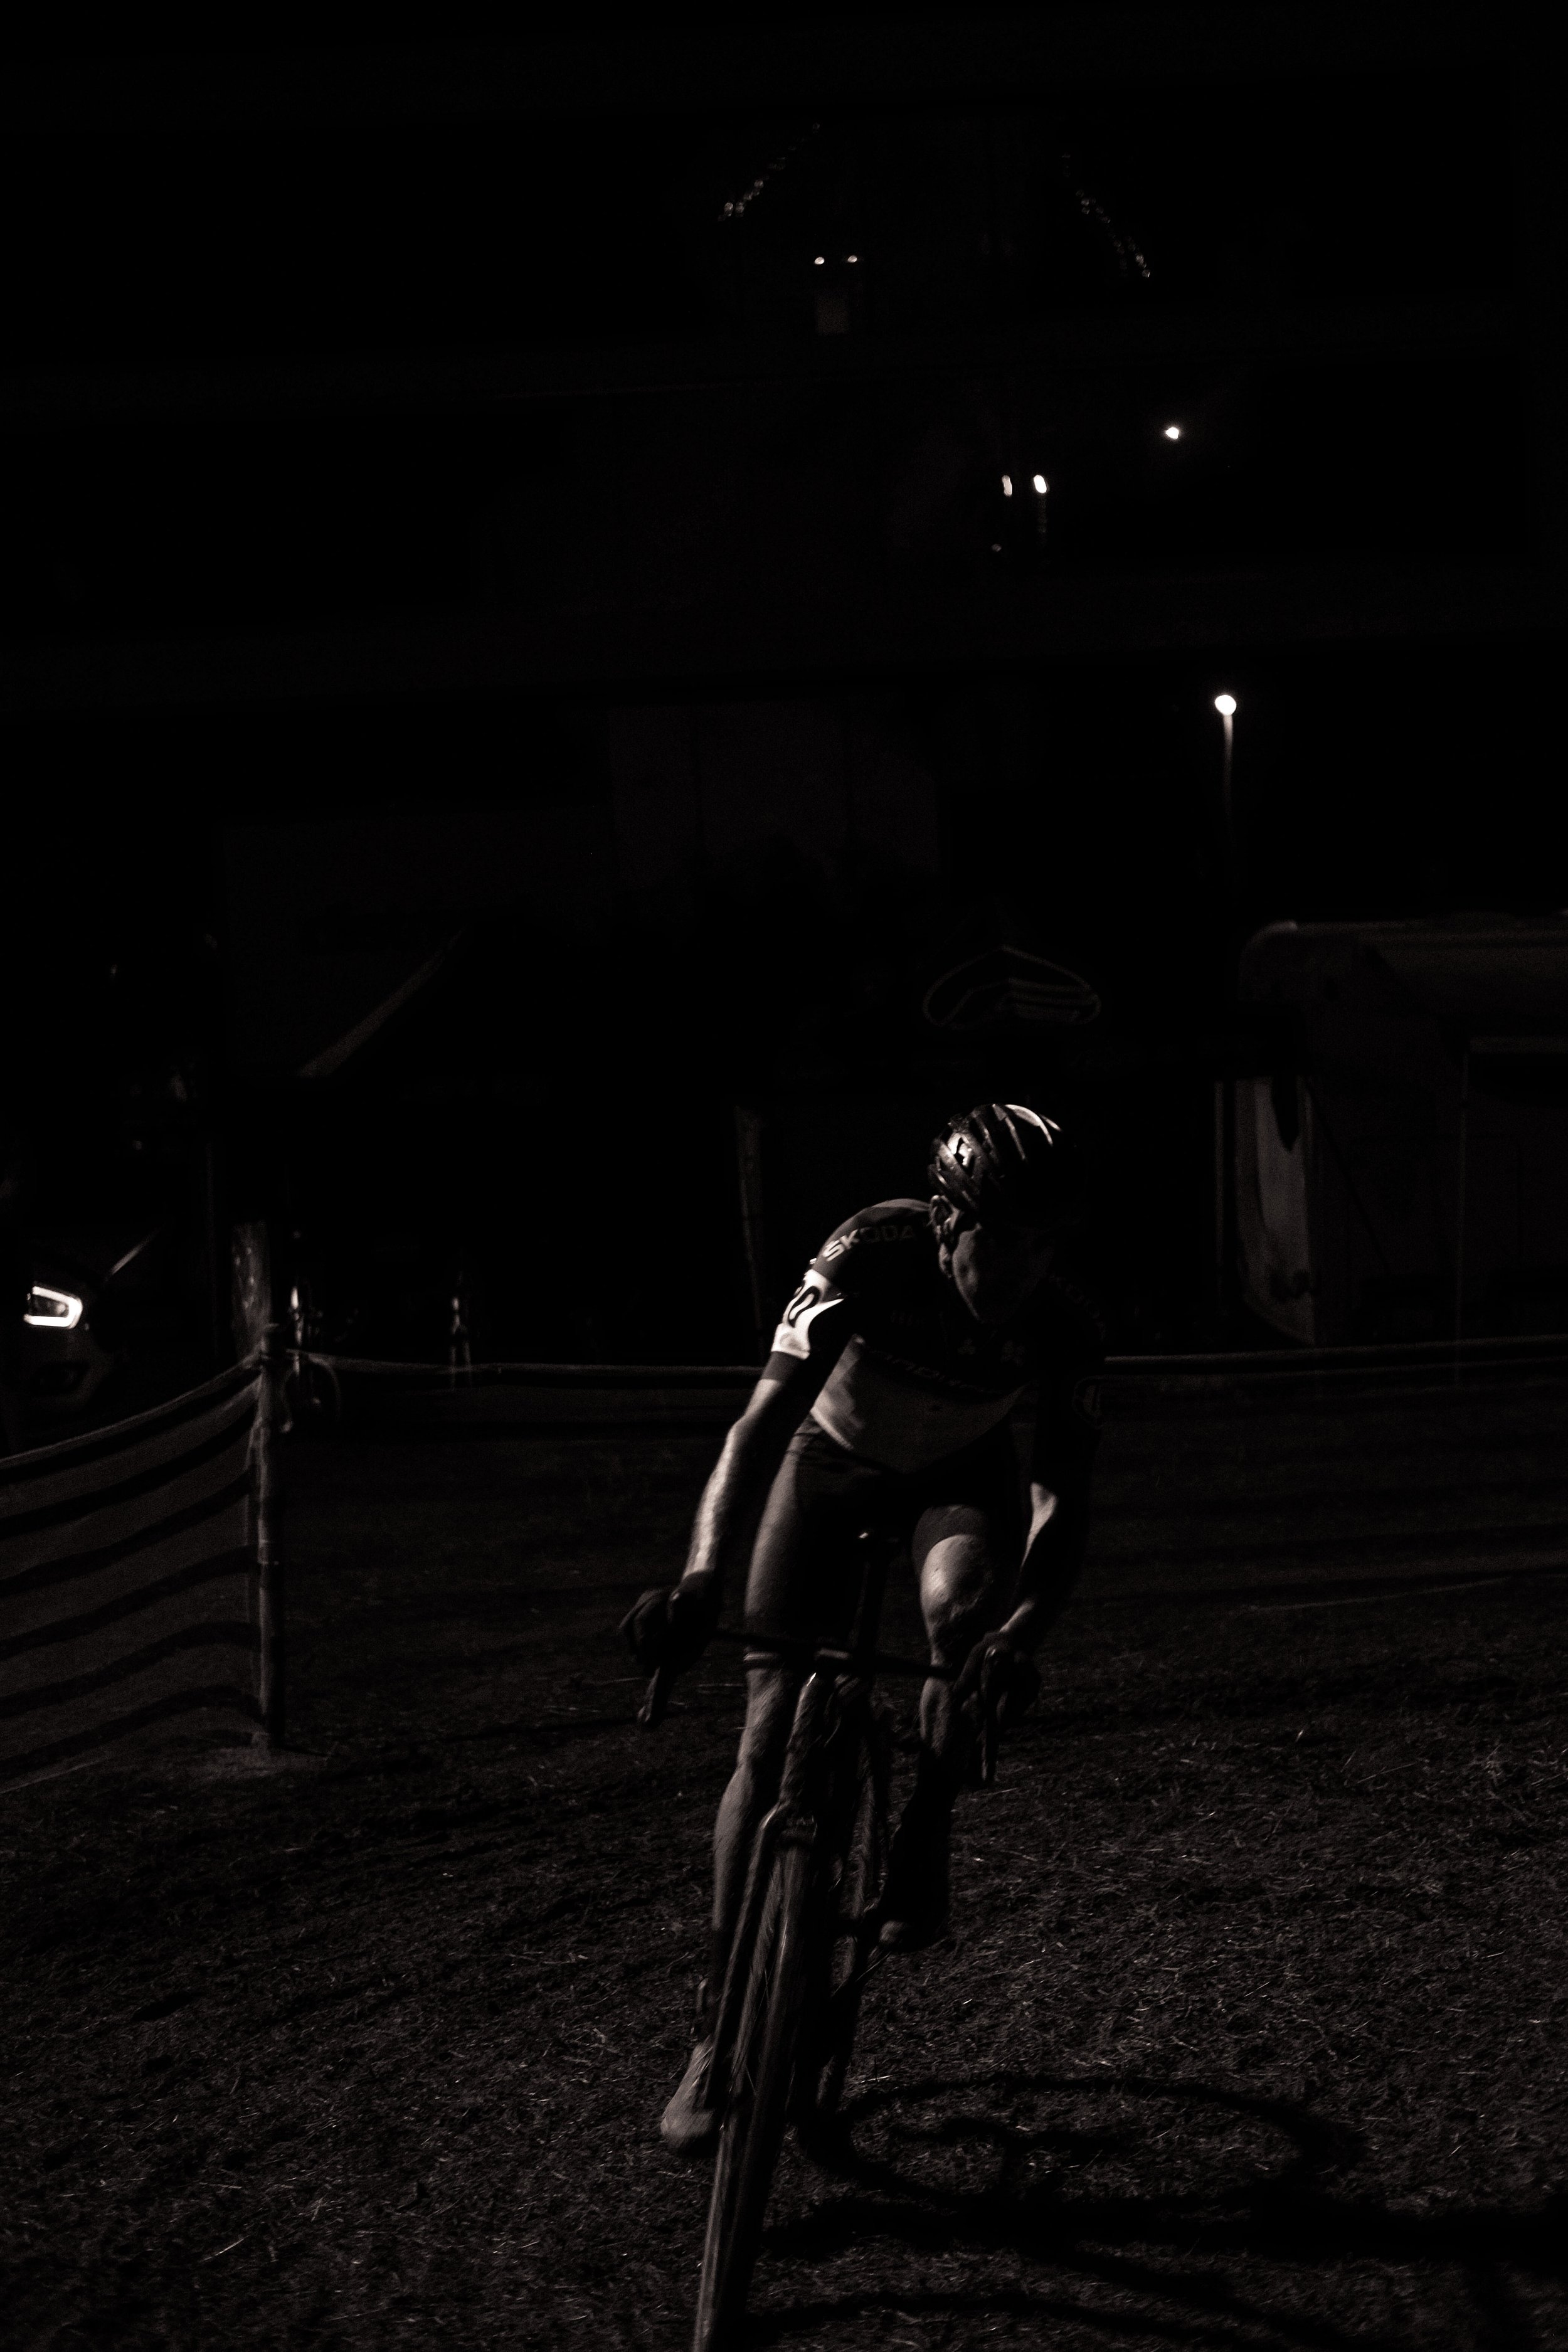 darkcross 21 turocycling-58.jpg